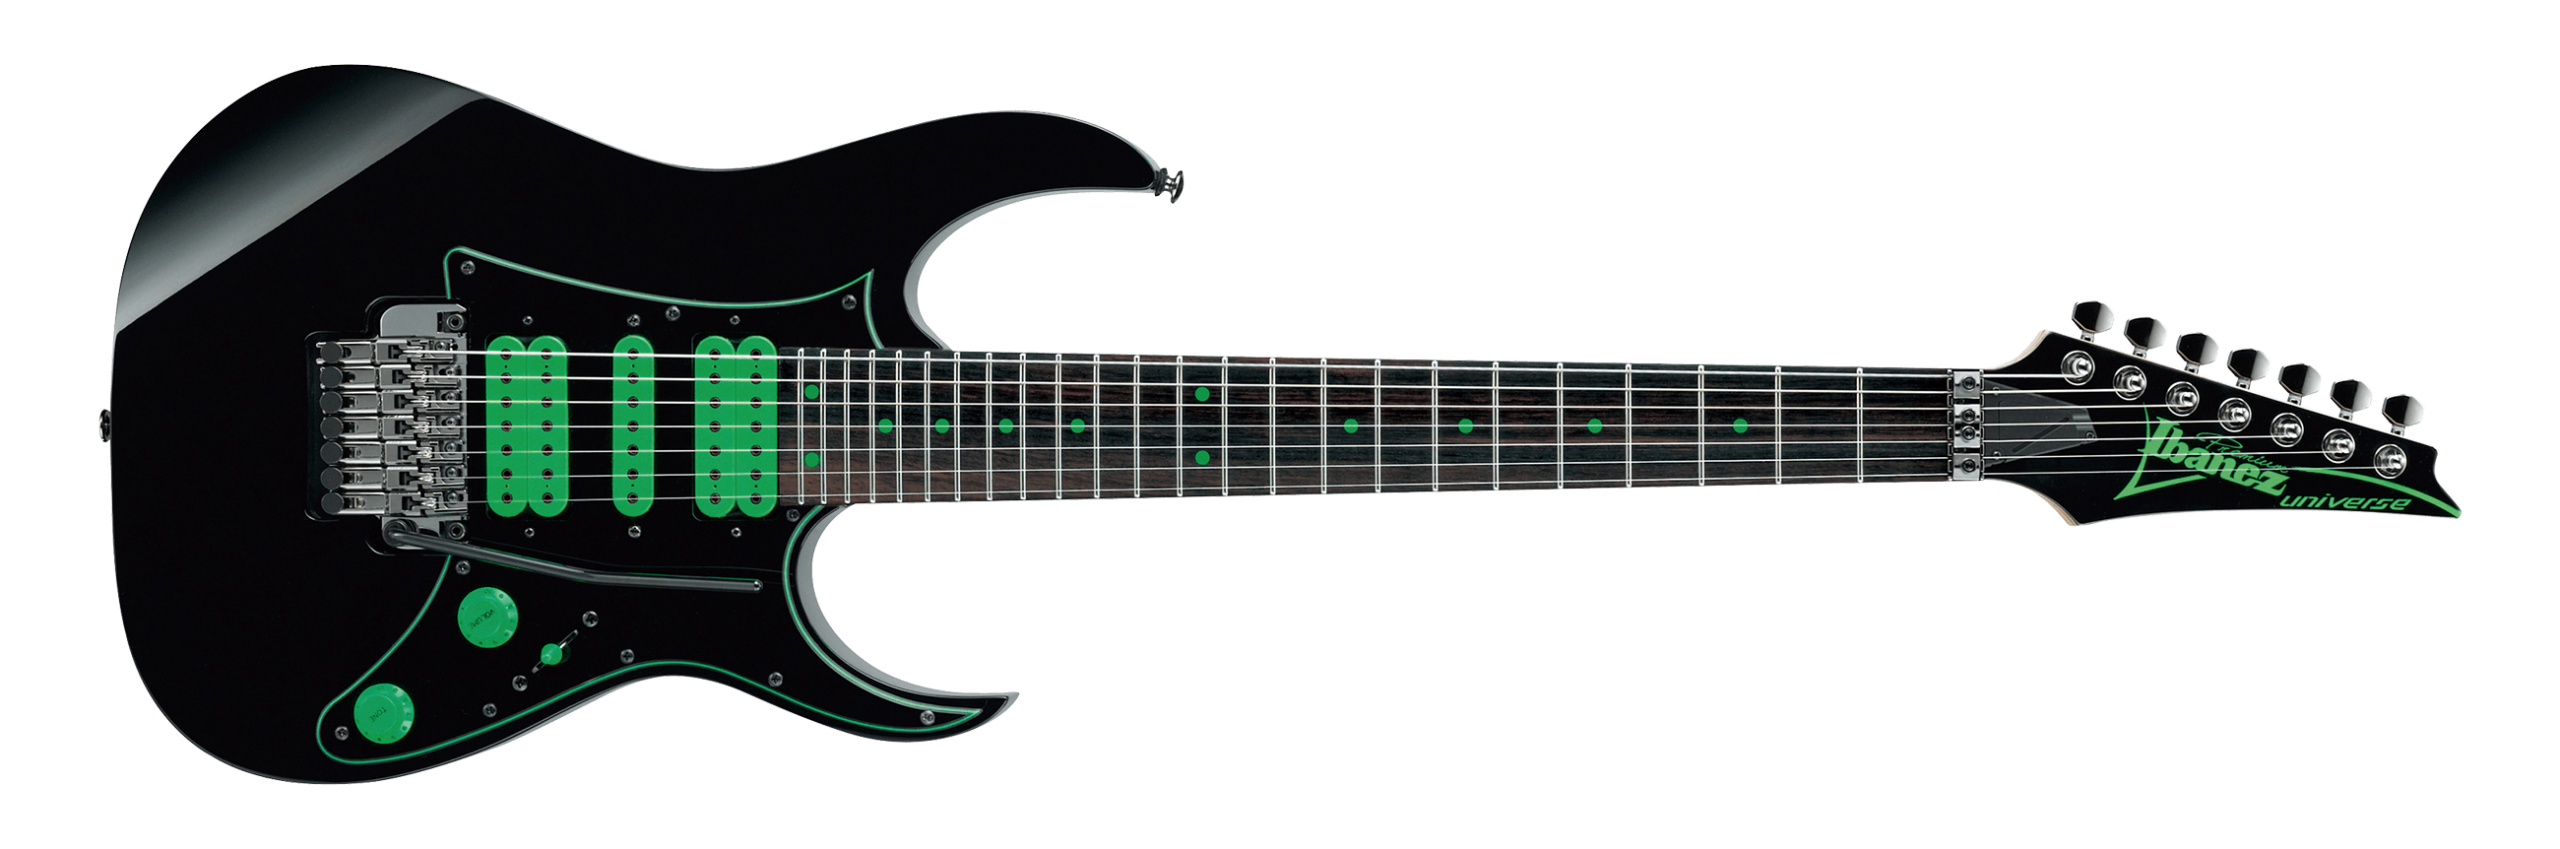 Ibanez Steve Vai Signature Premium UV70P 7 String Electric Guitar